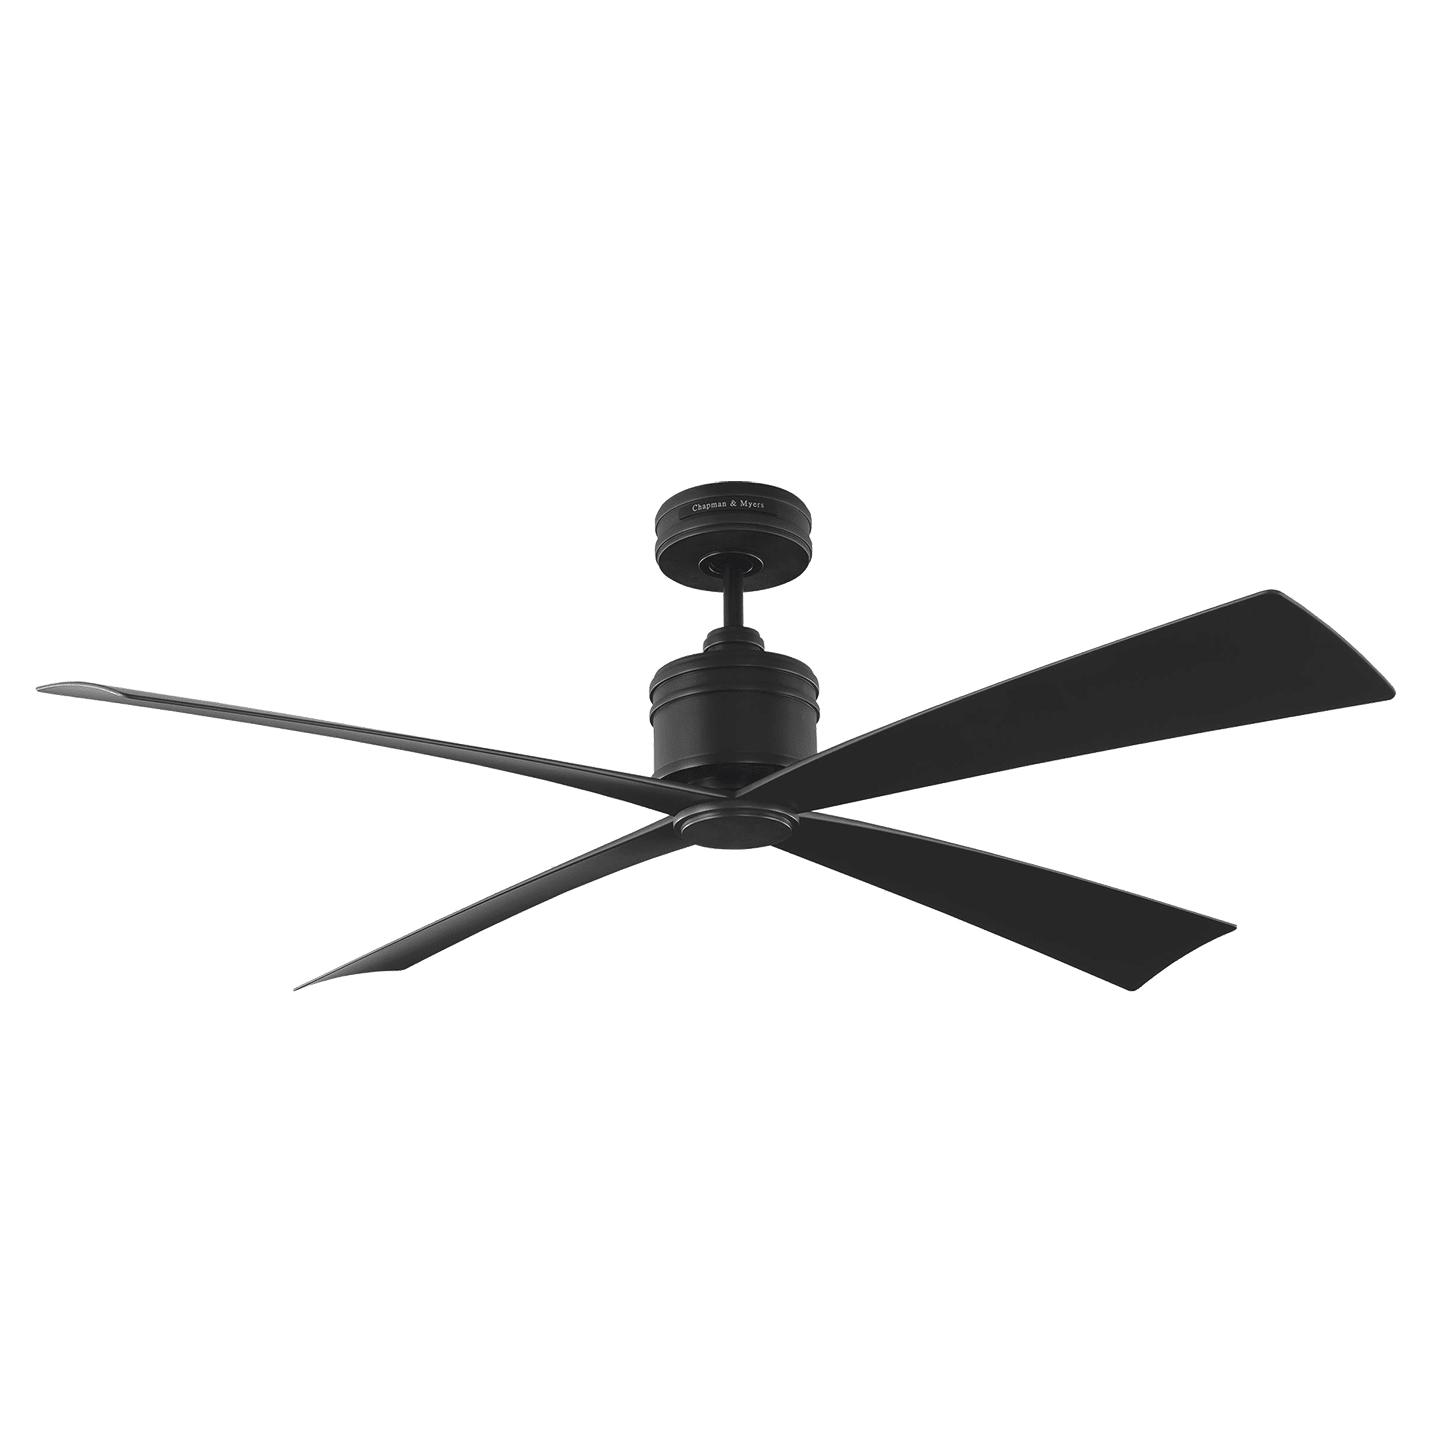 Купить Потолочный вентилятор Launceton 56" Ceiling Fan в интернет-магазине roooms.ru